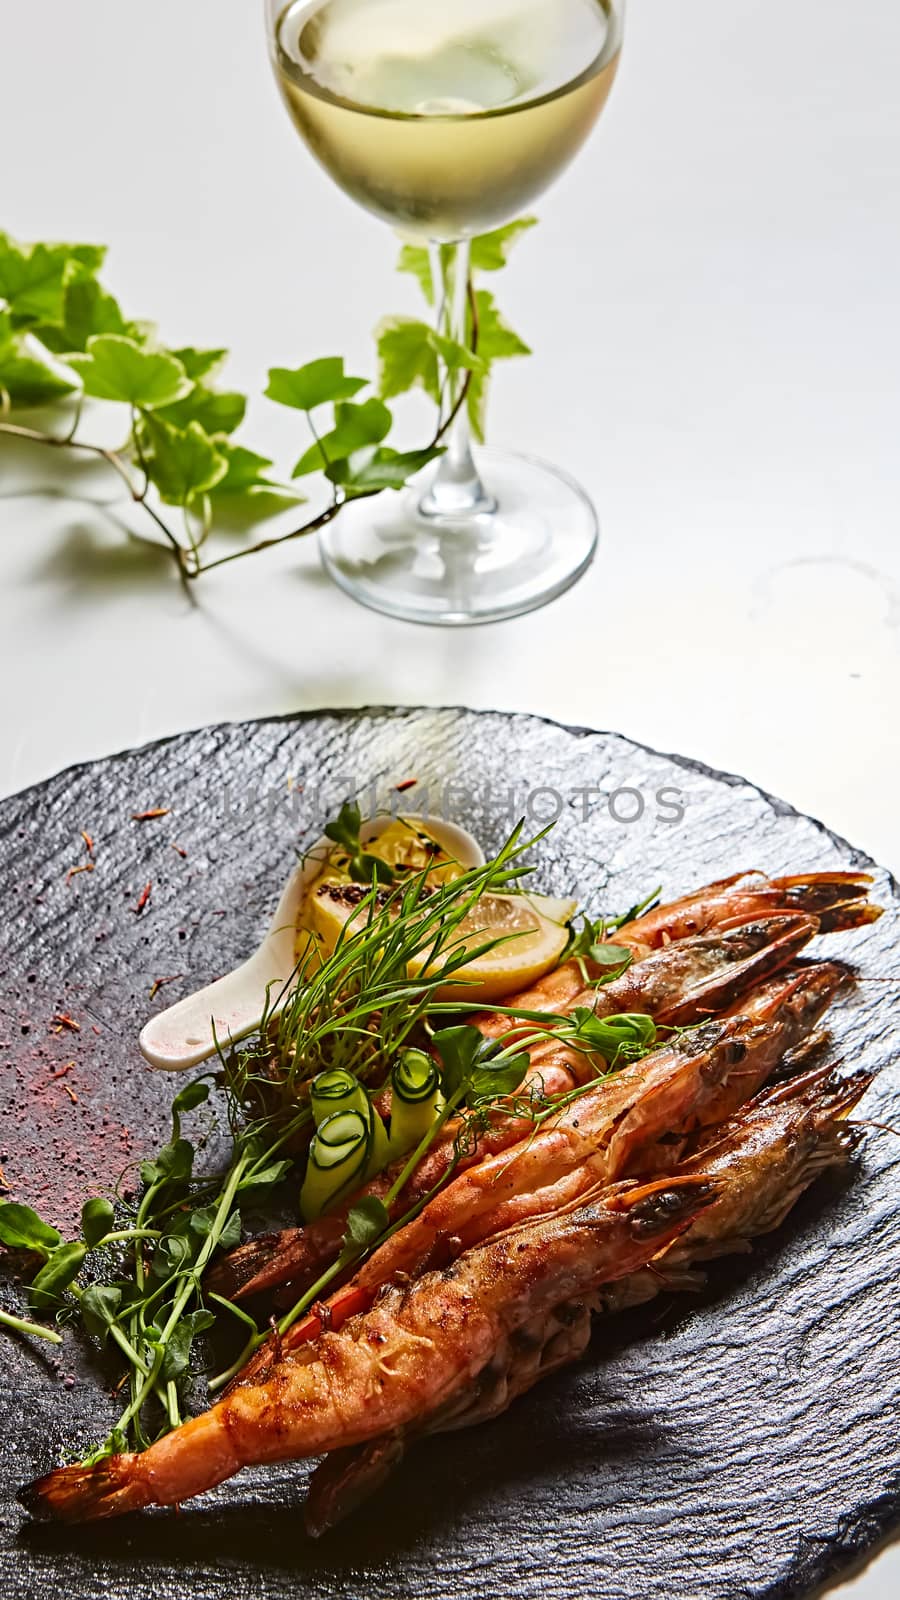 Grilled shrimp skewers. Seafood, shelfish. Shrimps Prawns skewers with herbs, garlic and lemon. by sarymsakov